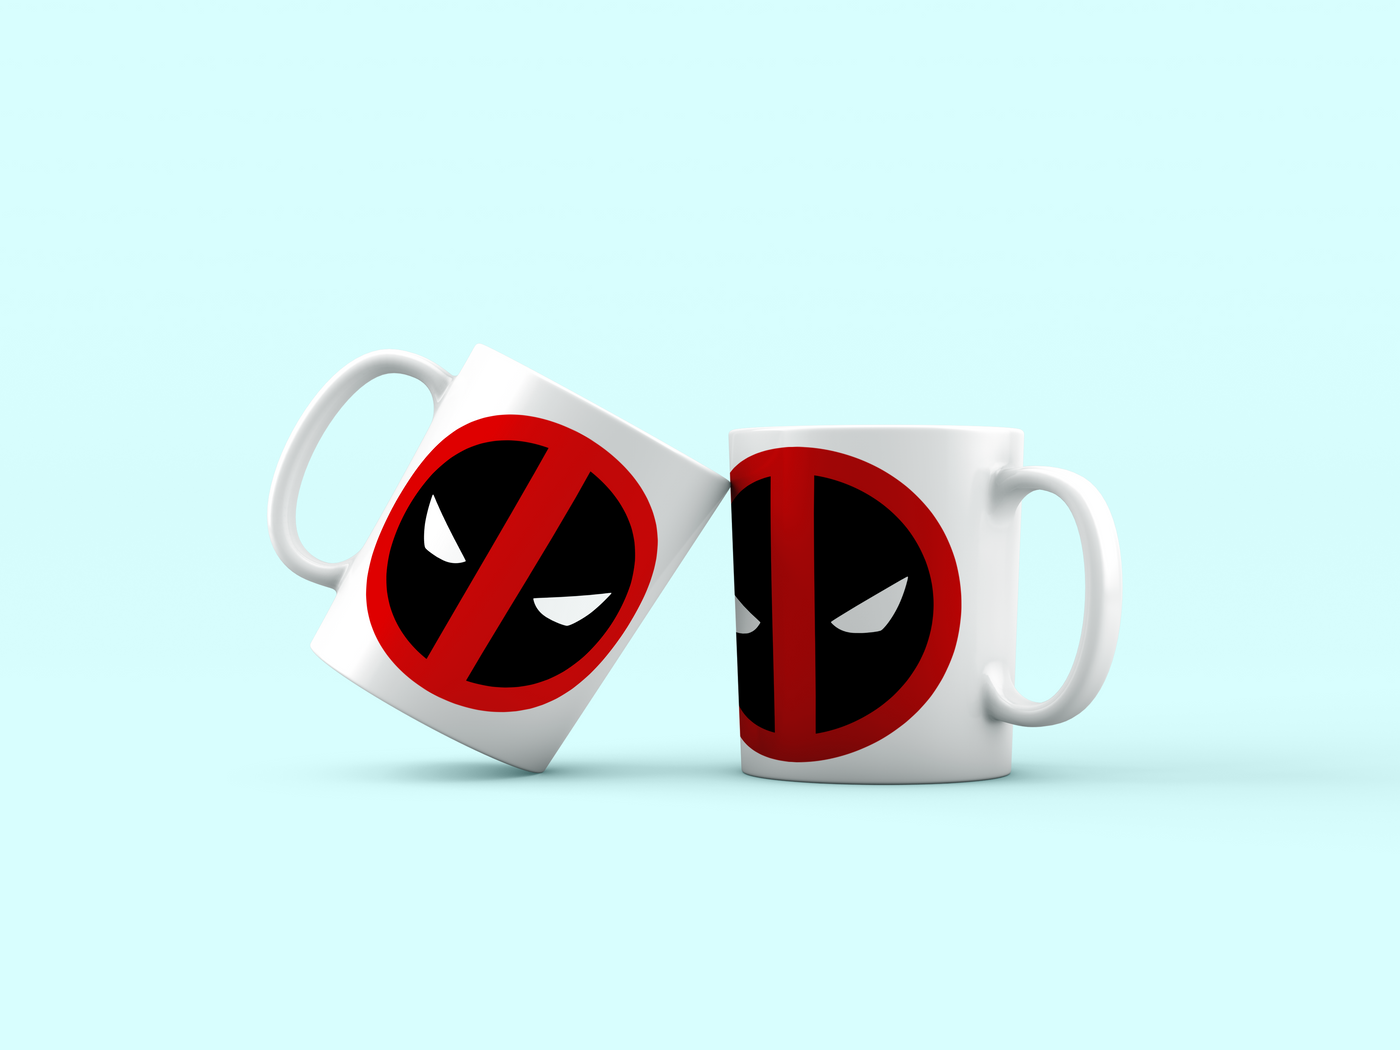 Deadpool Logo Coindoor Emblem – Modfather Pinball Mods